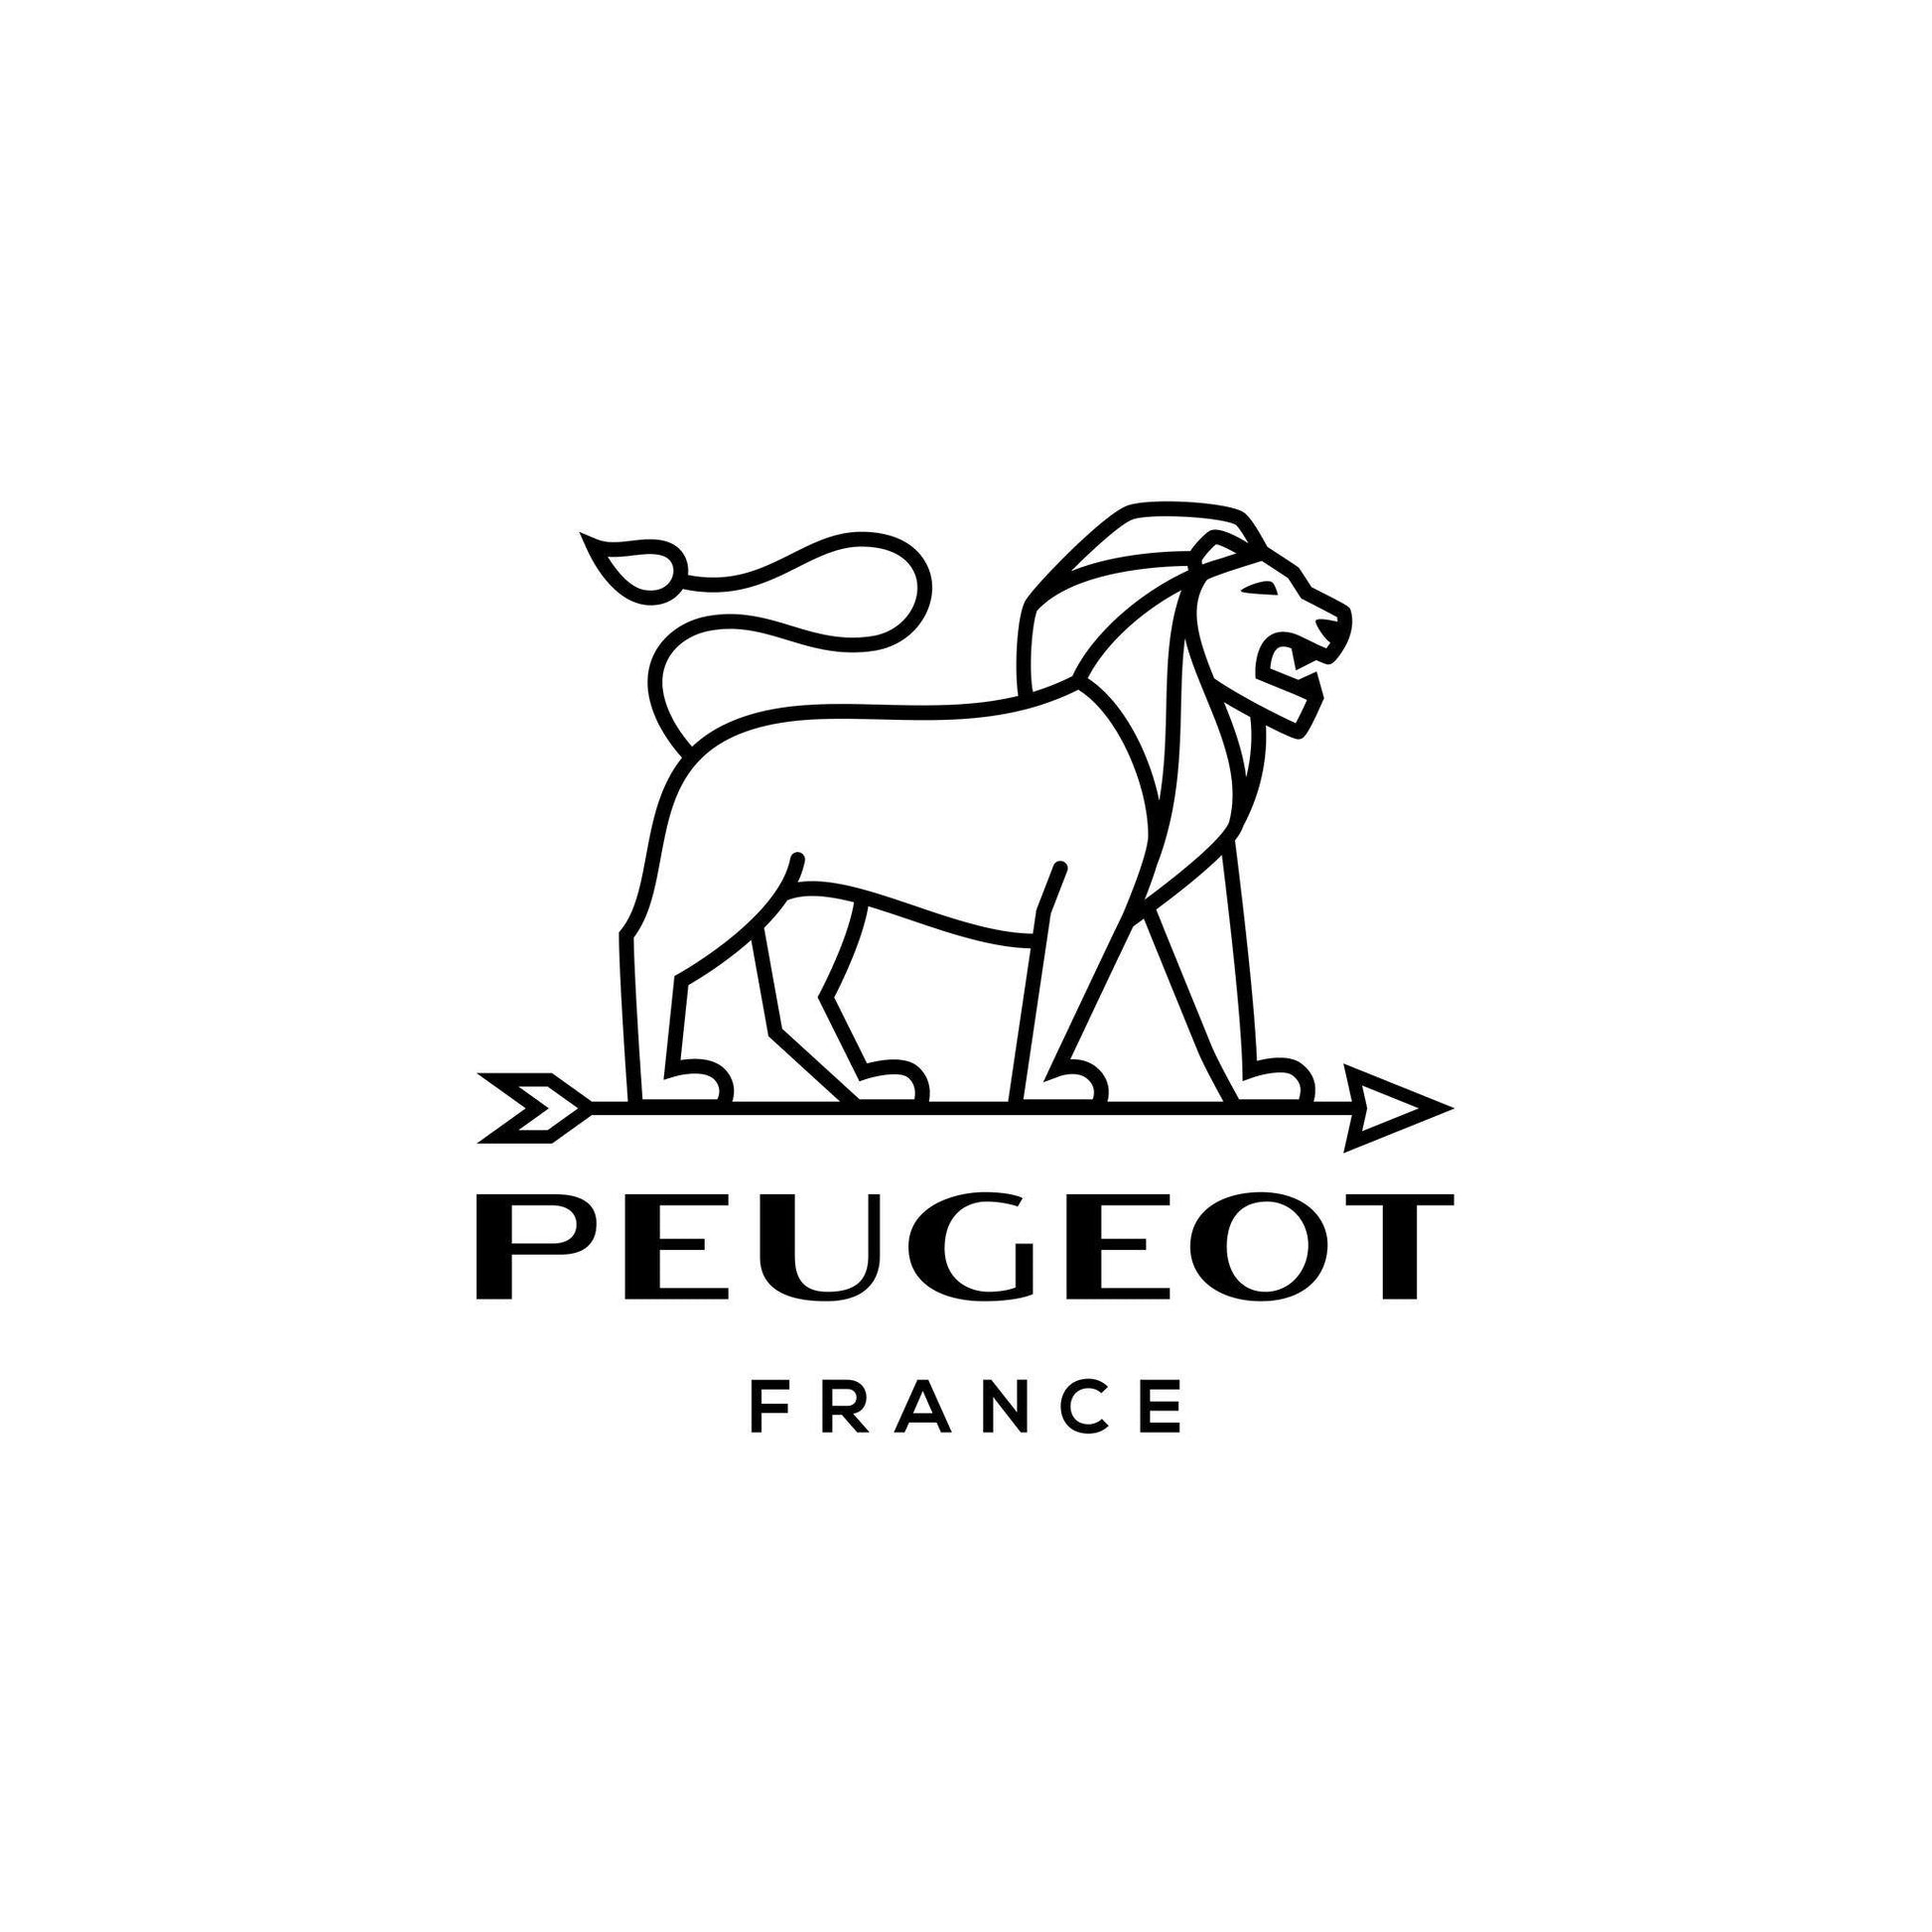 Paris Pepper Mill - Natural Beechwood Kitchen Peugeot Prettycleanshop